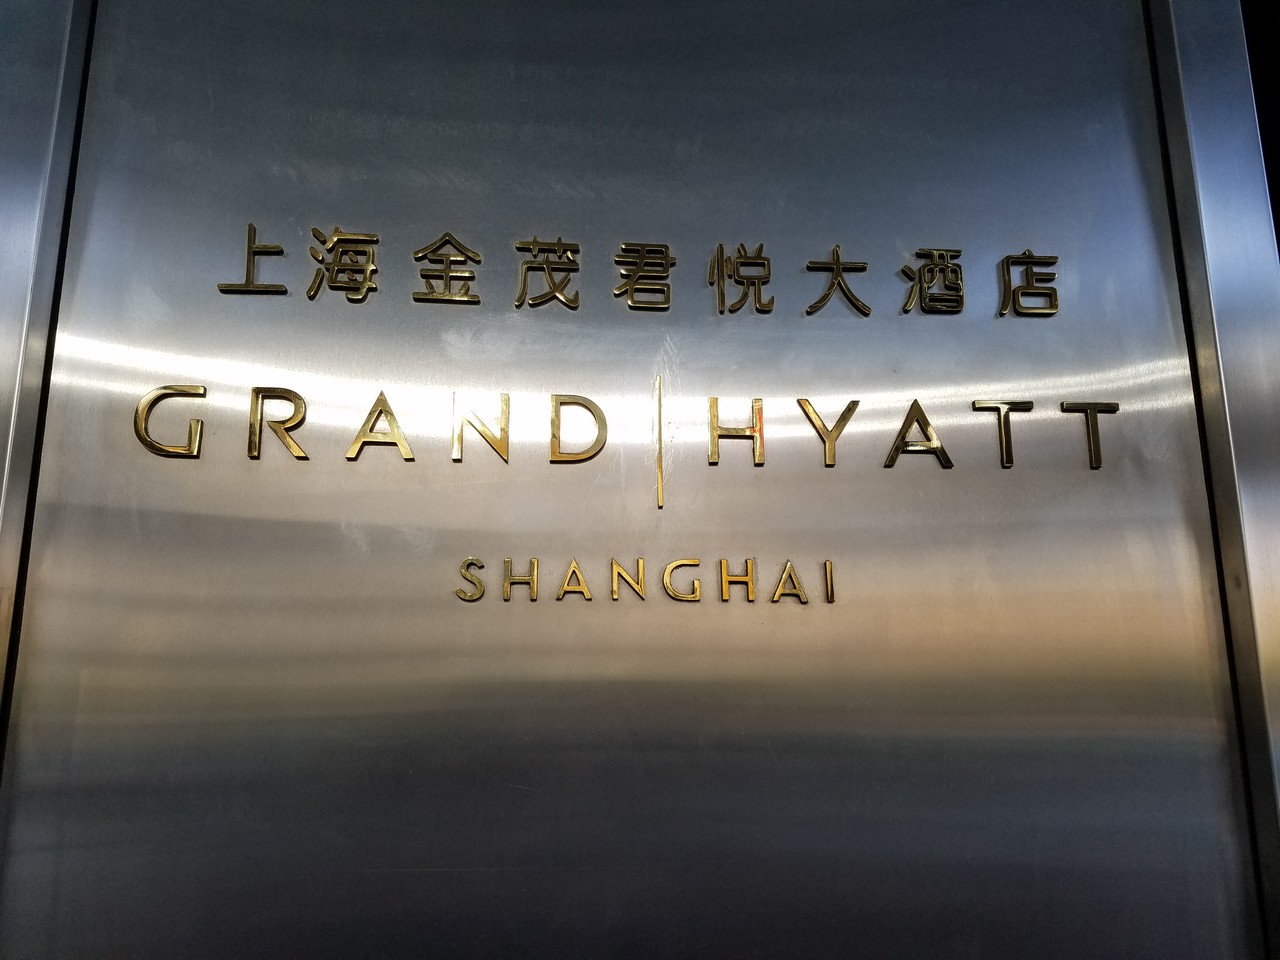 The Grand Hyatt Shanghai